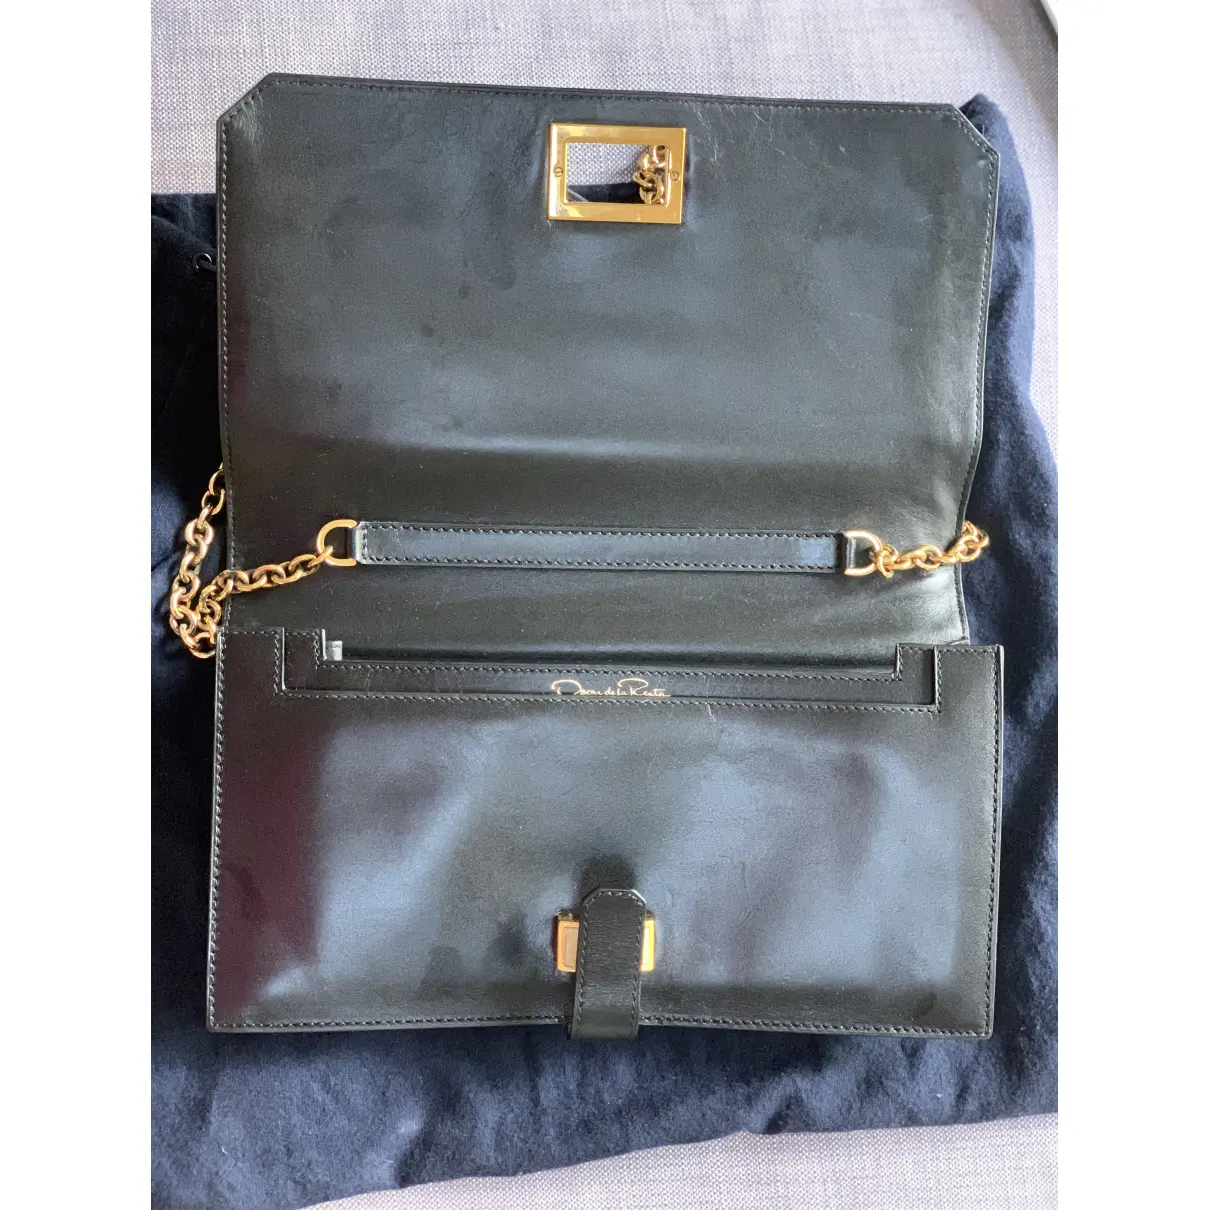 Leather handbag Oscar De La Renta - Vintage